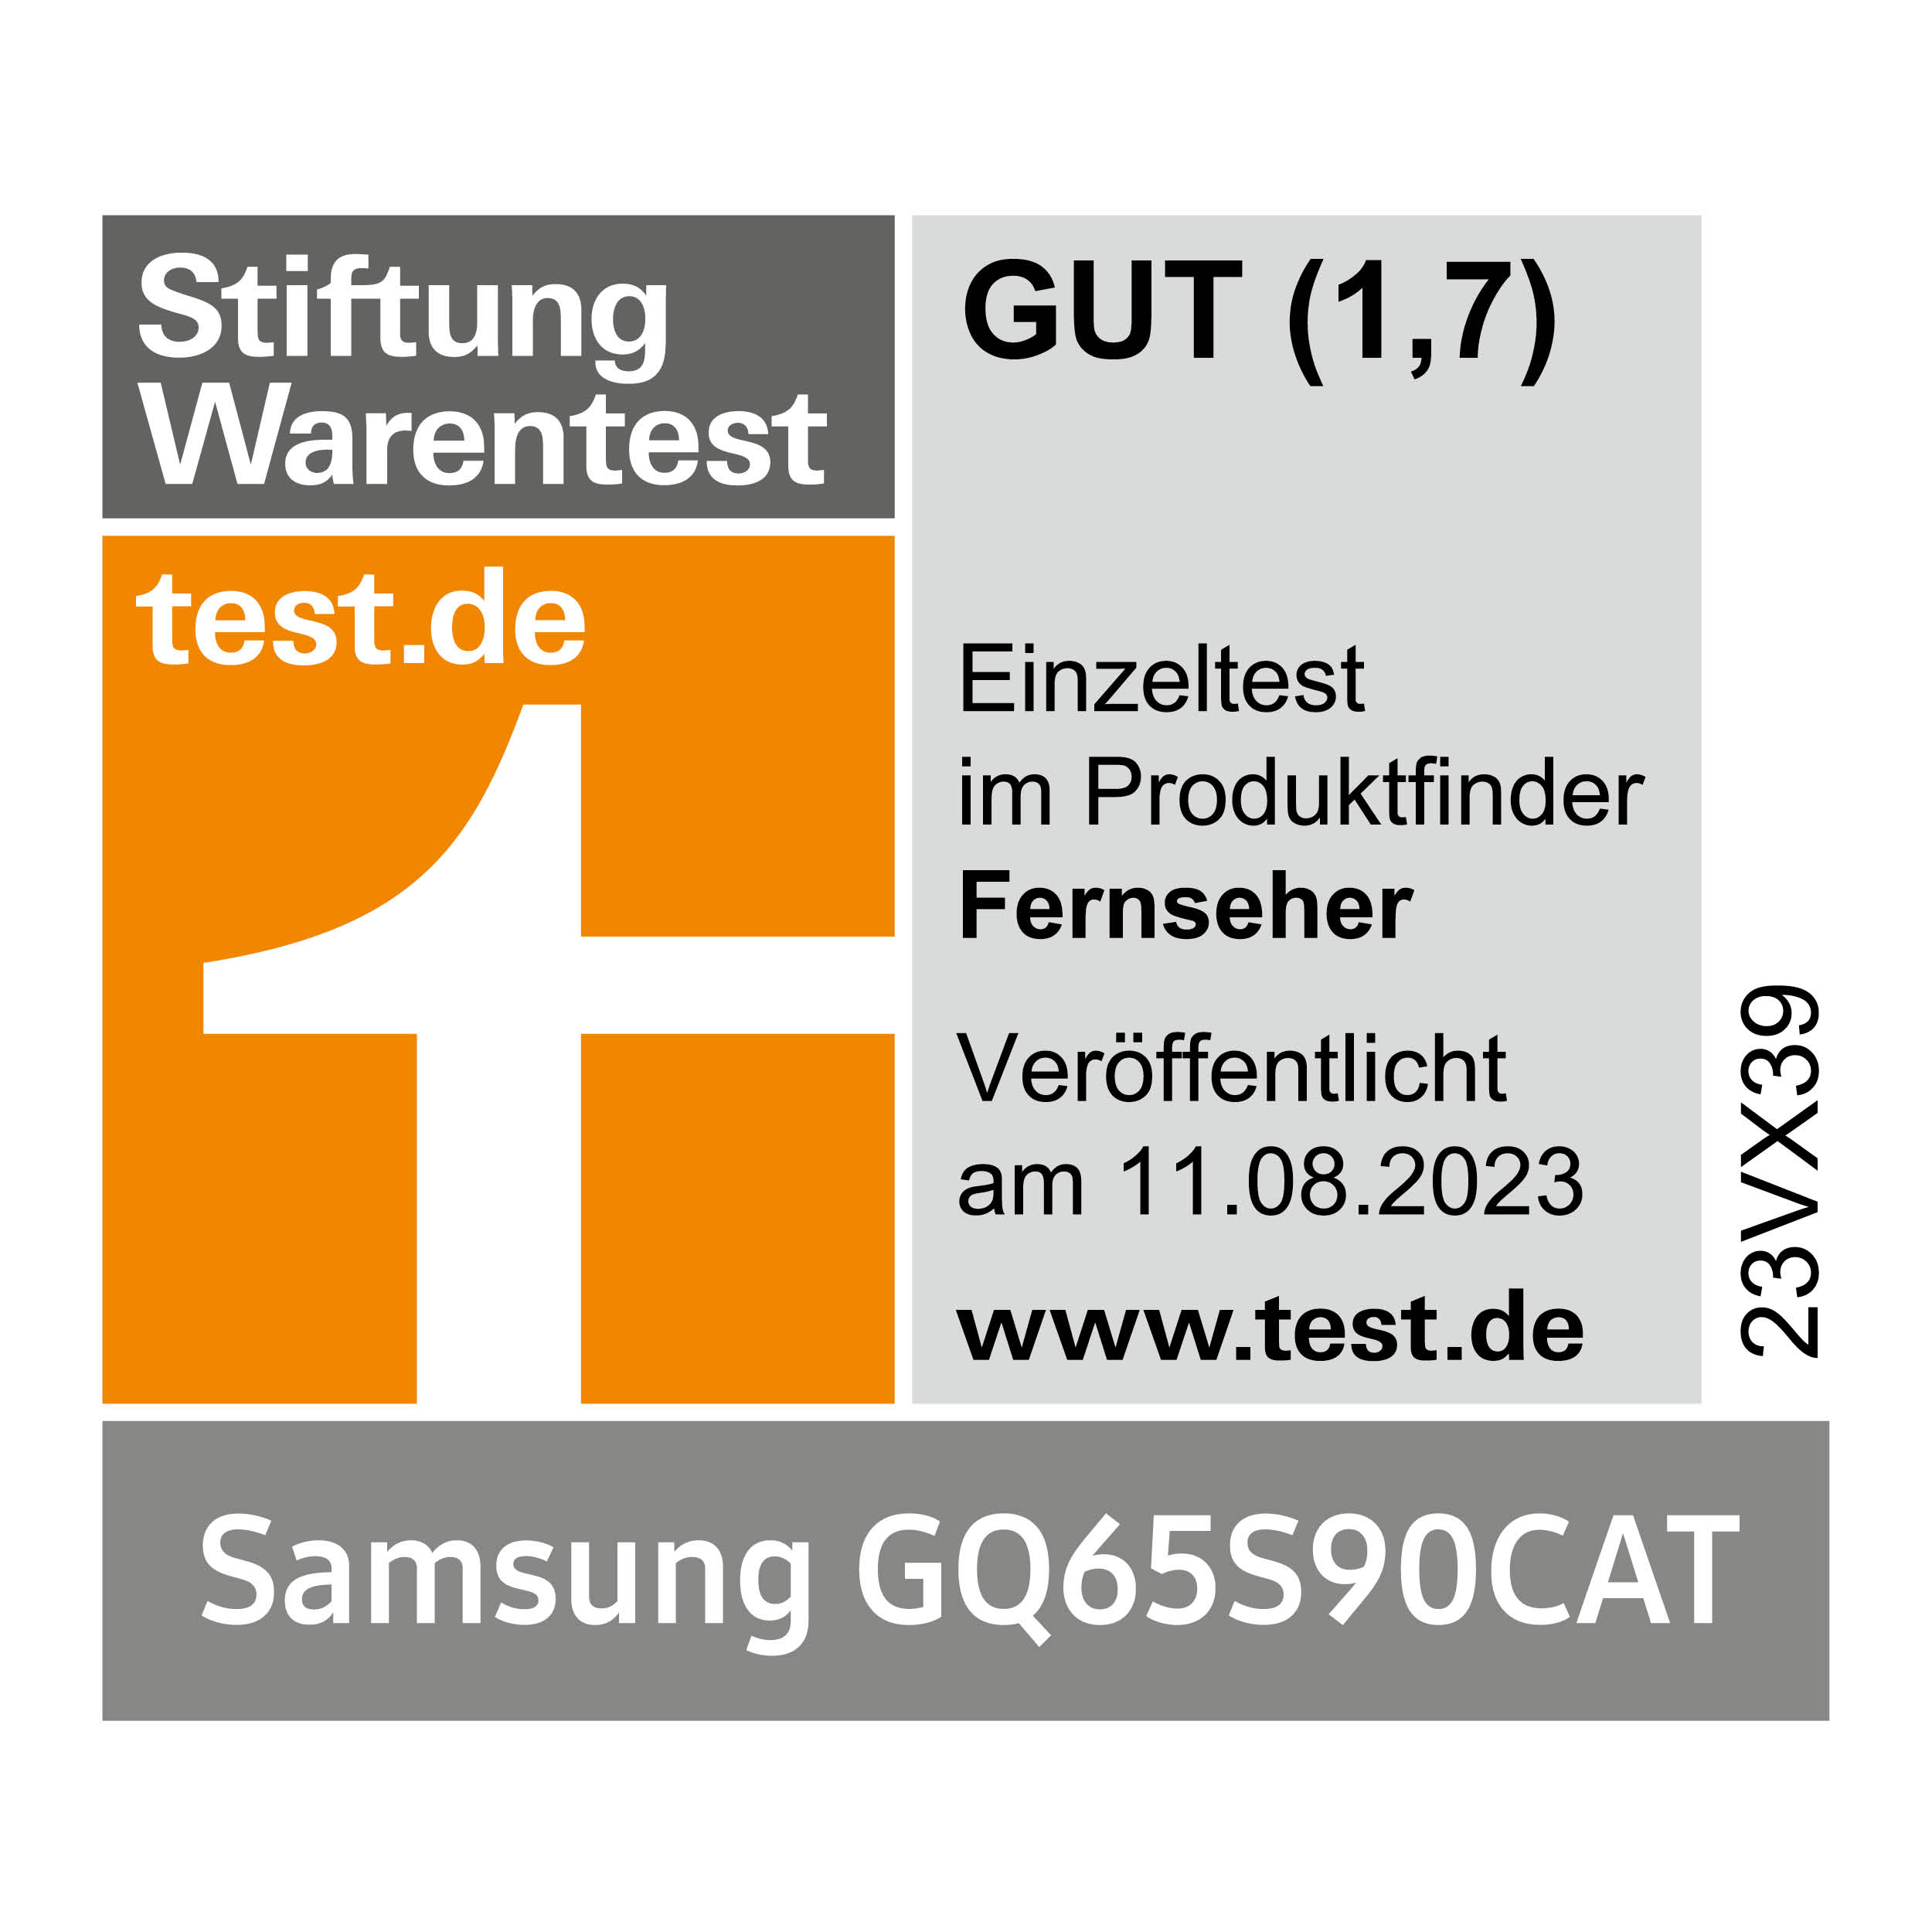 121038_StiWa_Produktfinder_Fernseher_GQ65S90CAT_mitAngaben-4